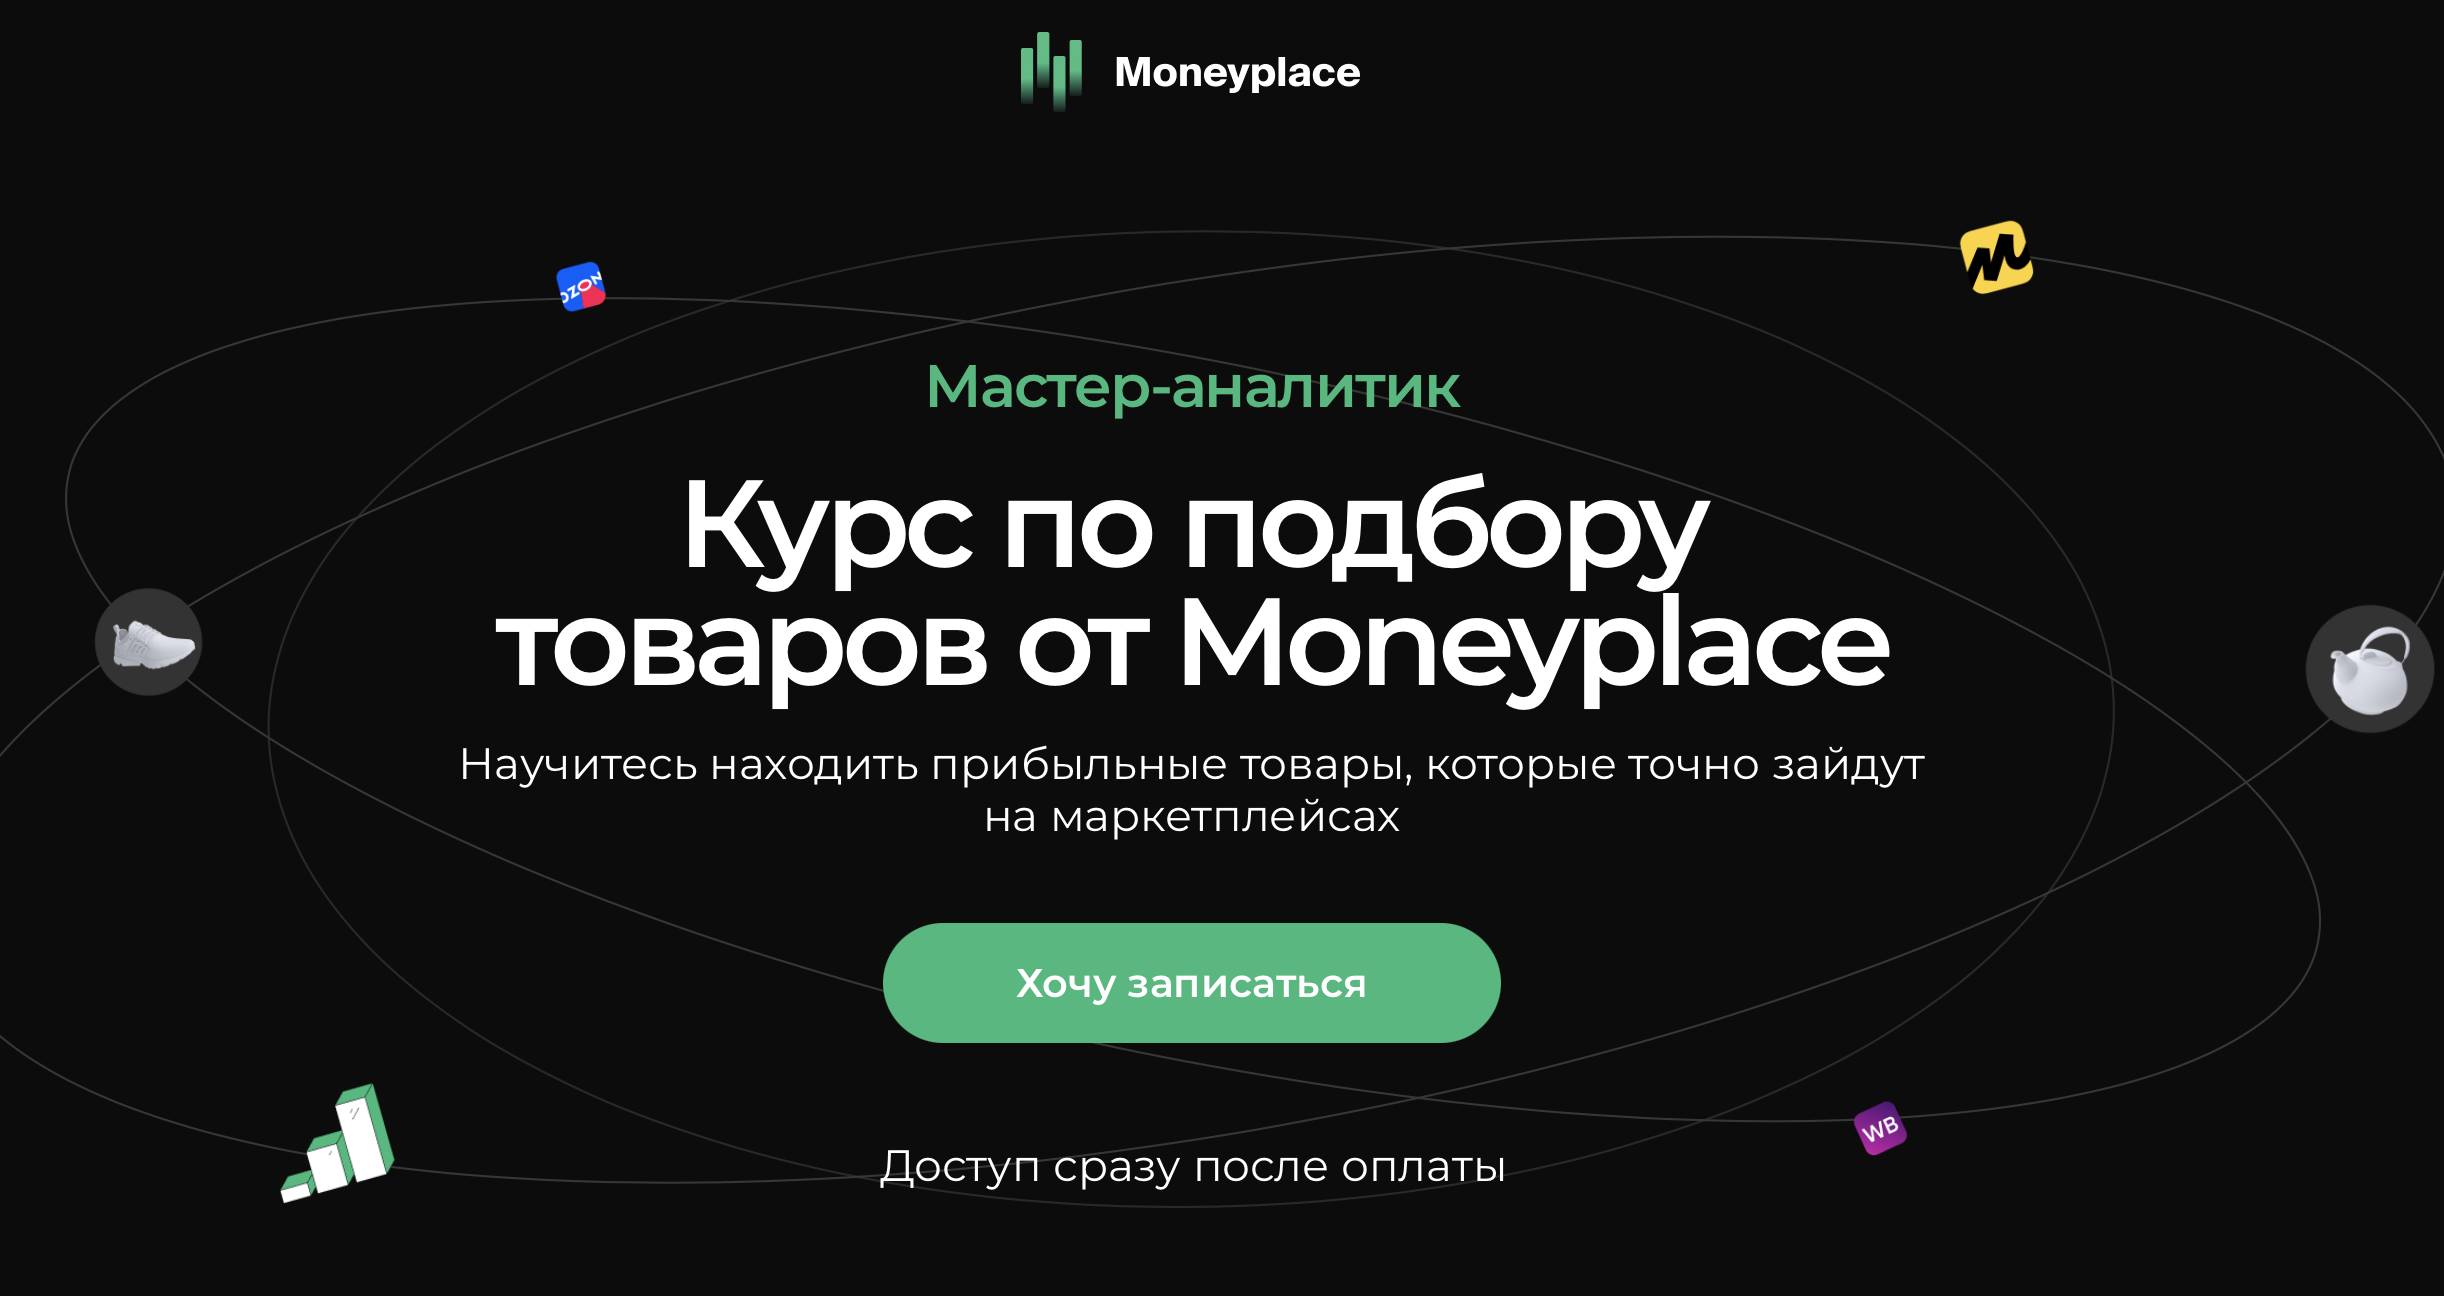 [Moneyplace] Гранд мастер аналитик